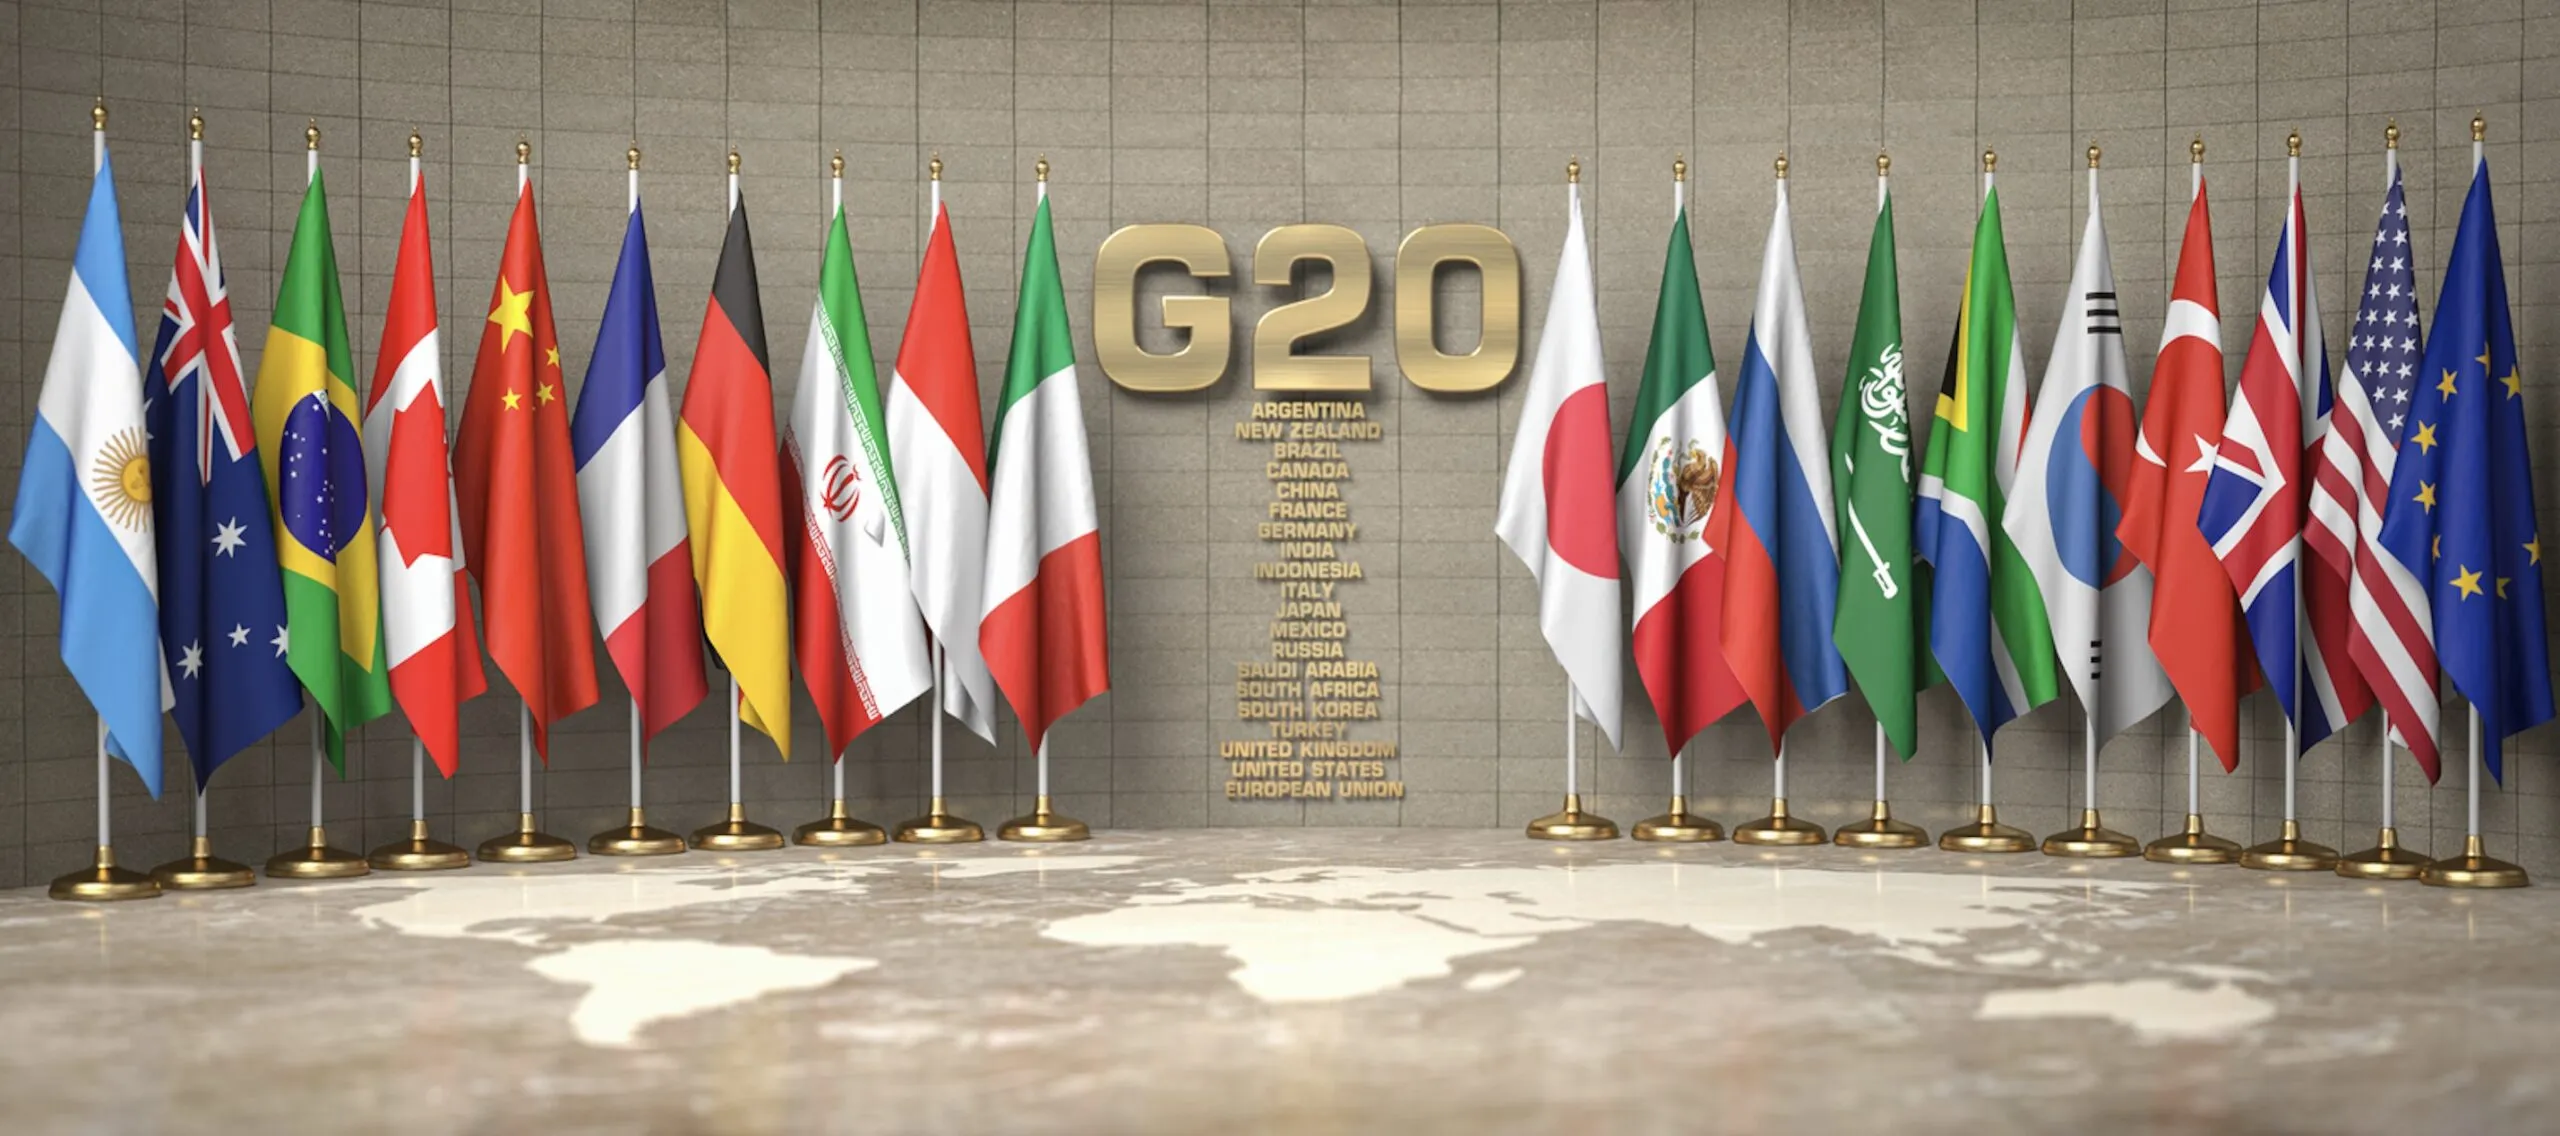  Exclusion de la Russie du G20 : Cette mesure serait incompatible avec le principe des relations multilatérales.